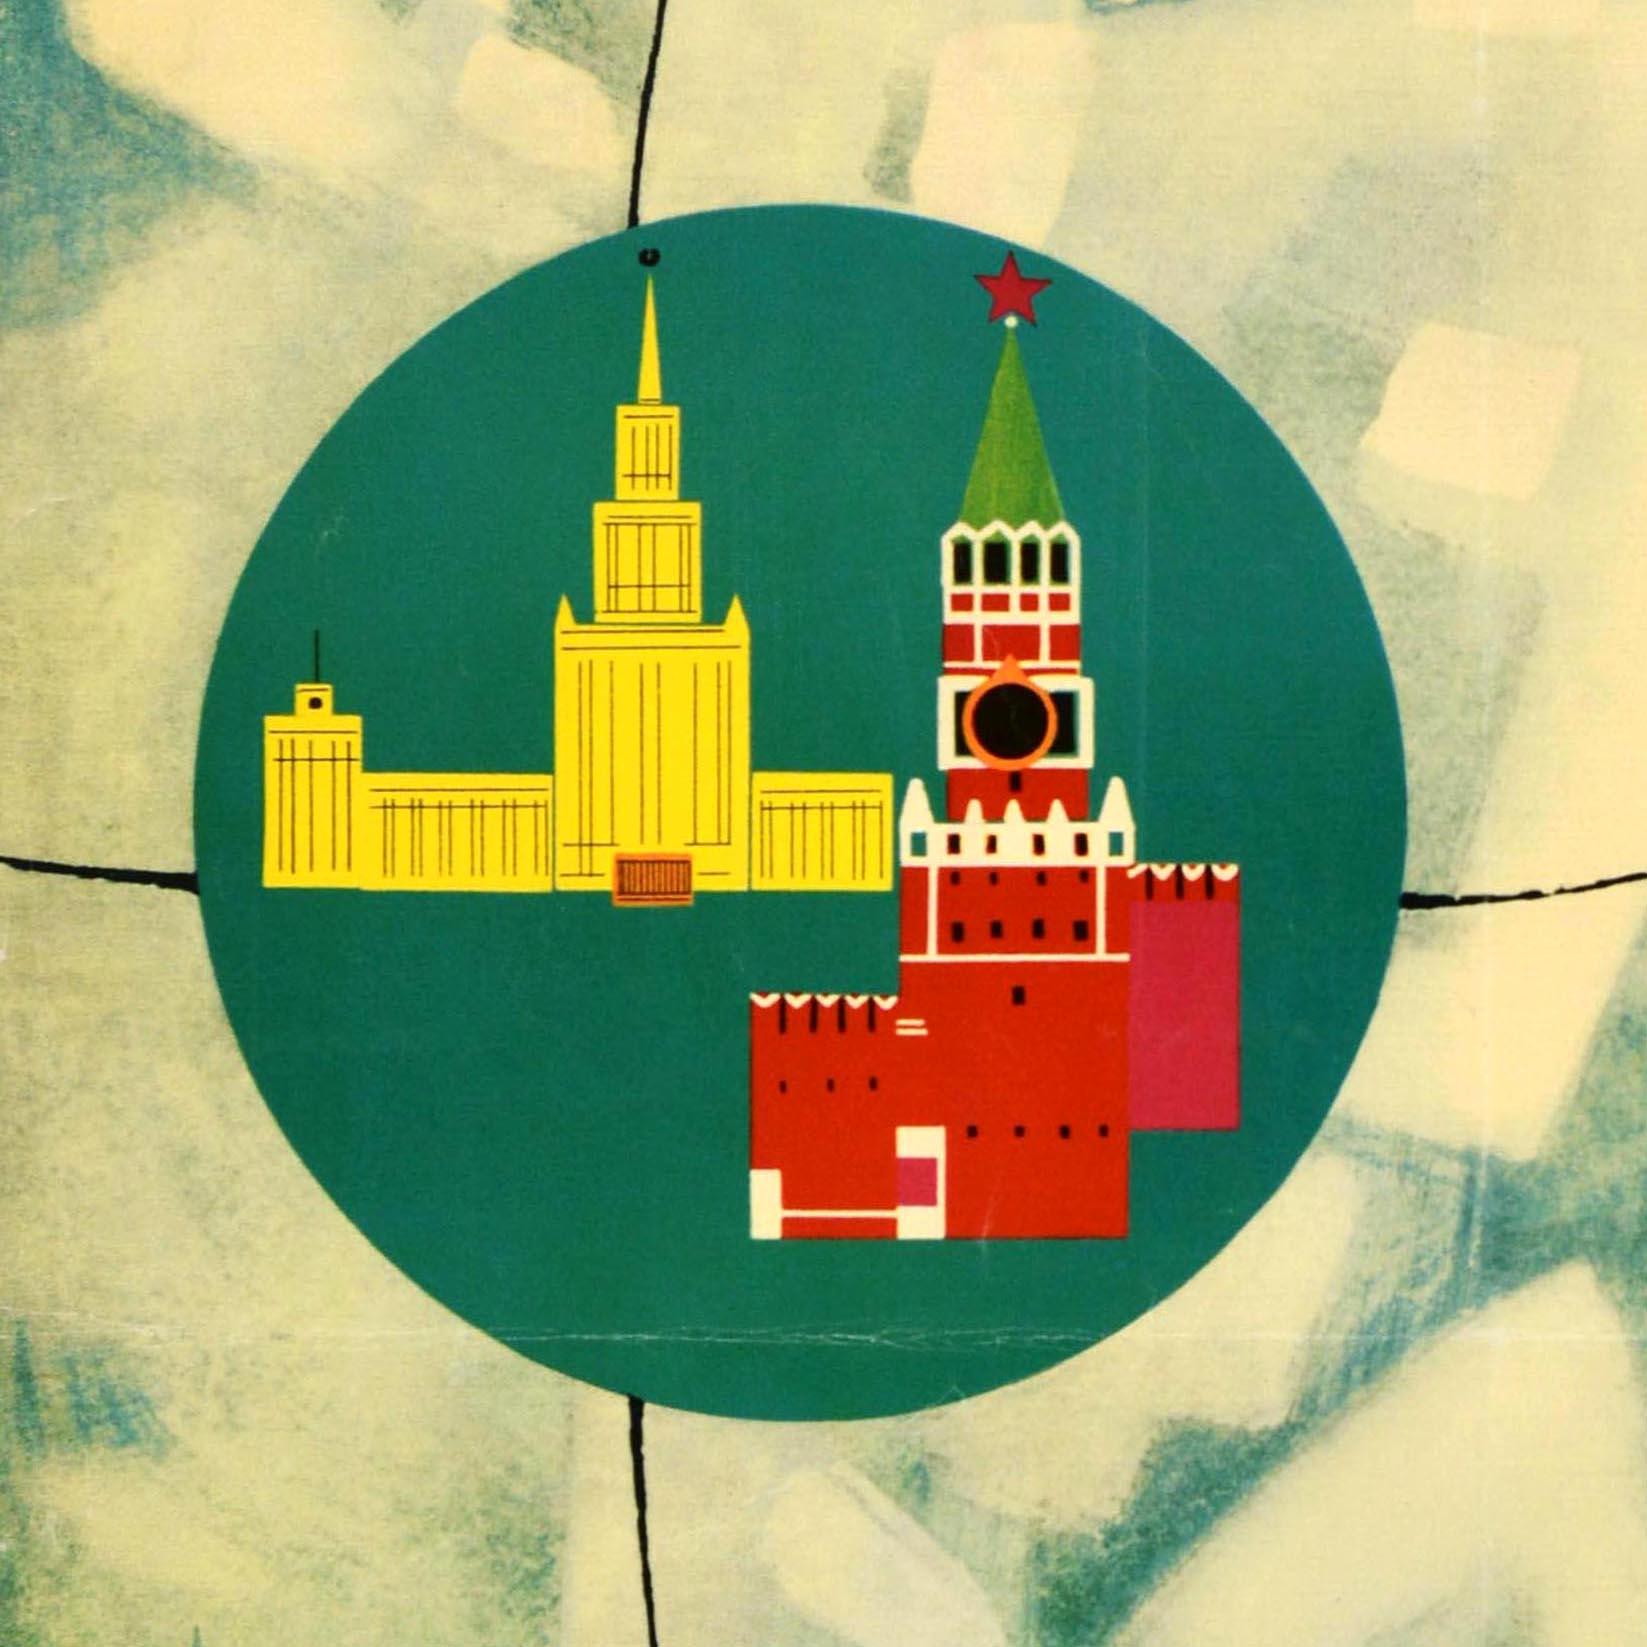 Affiche de voyage vintage originale promouvant le tourisme en Union soviétique, comportant une grande illustration d'un cosmonaute / astronaute en combinaison spatiale avec une étoile rouge au-dessus et une image d'un gratte-ciel et du Kremlin de